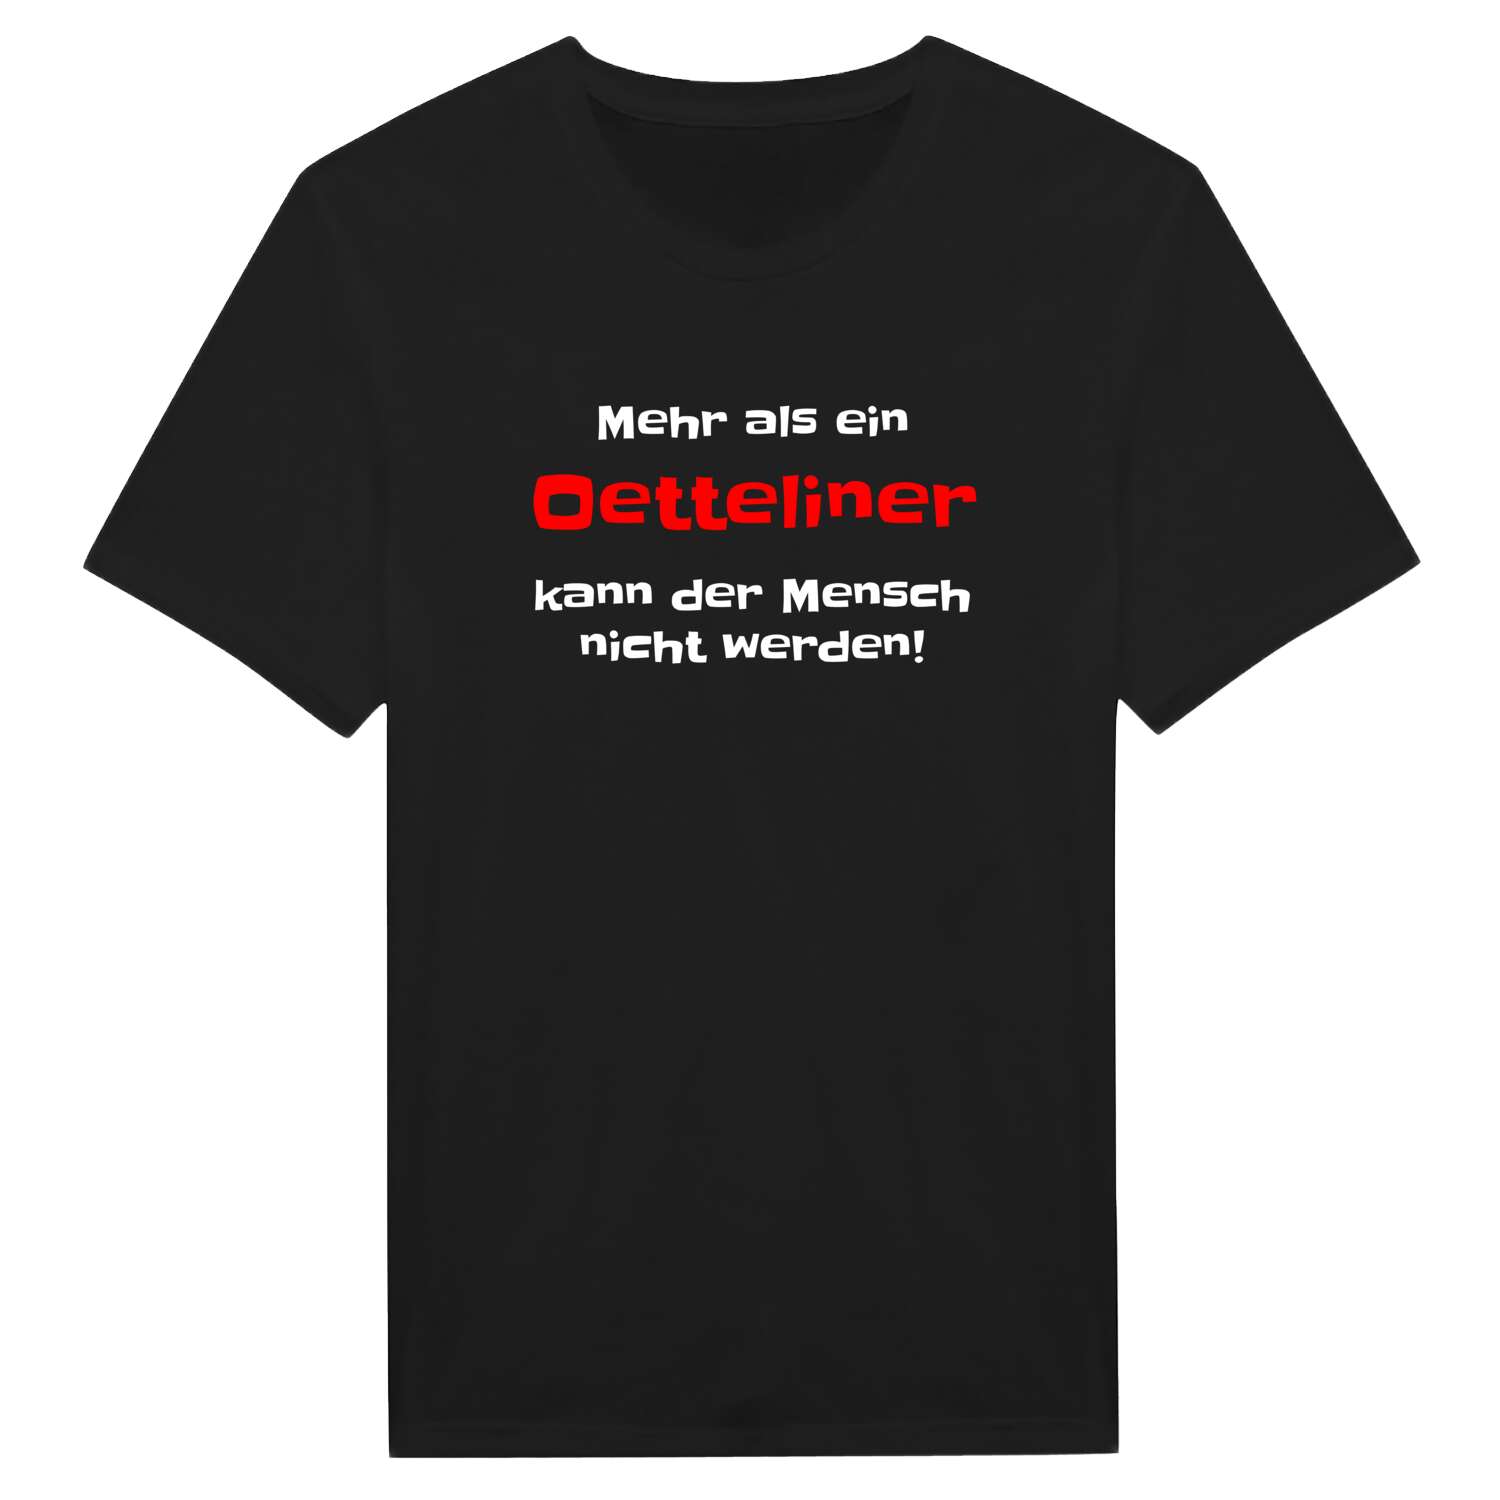 Oettelin T-Shirt »Mehr als ein«